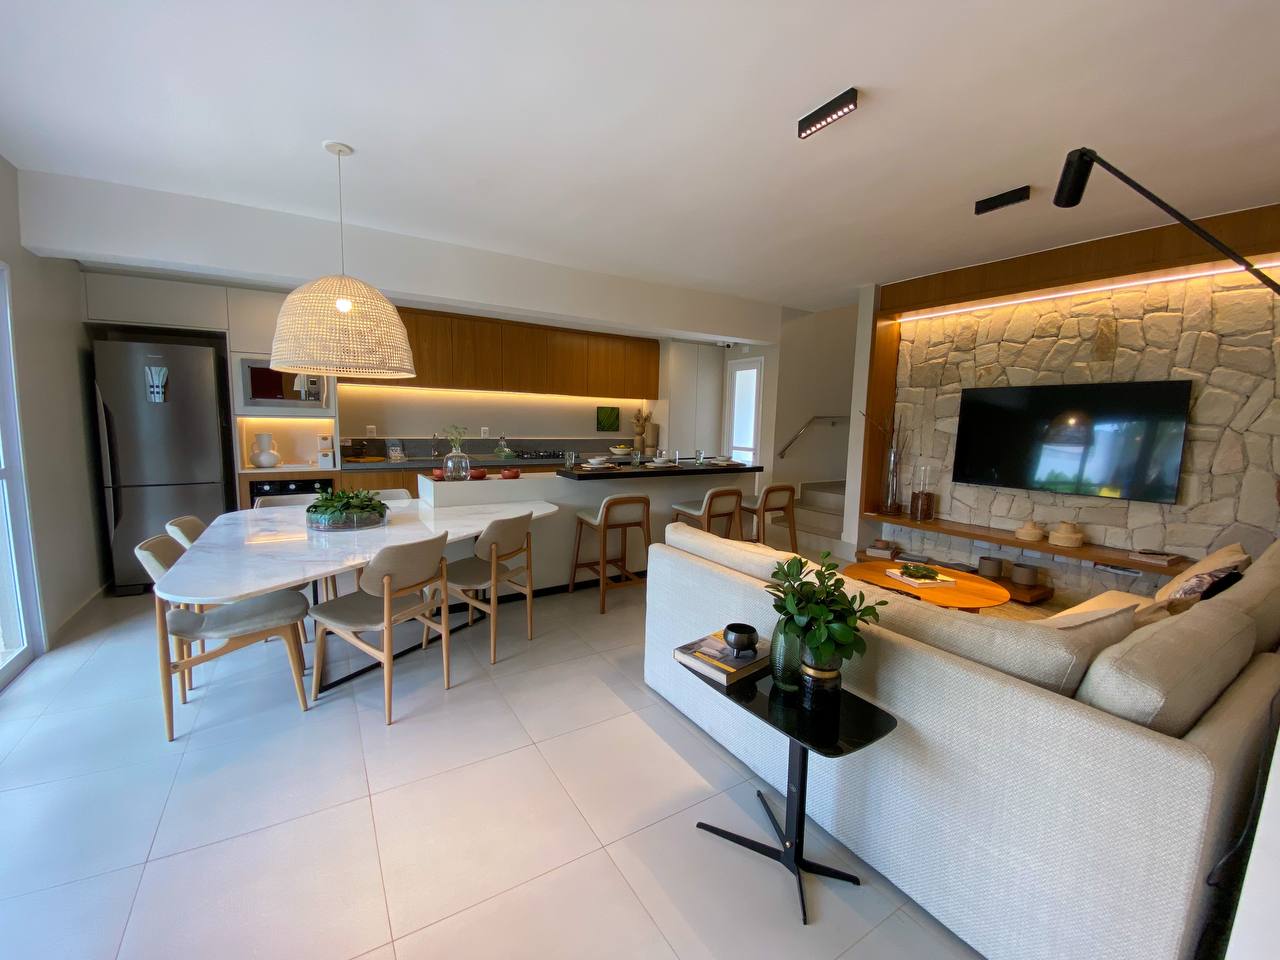 Sala com cozinha integrada Decoração moderna